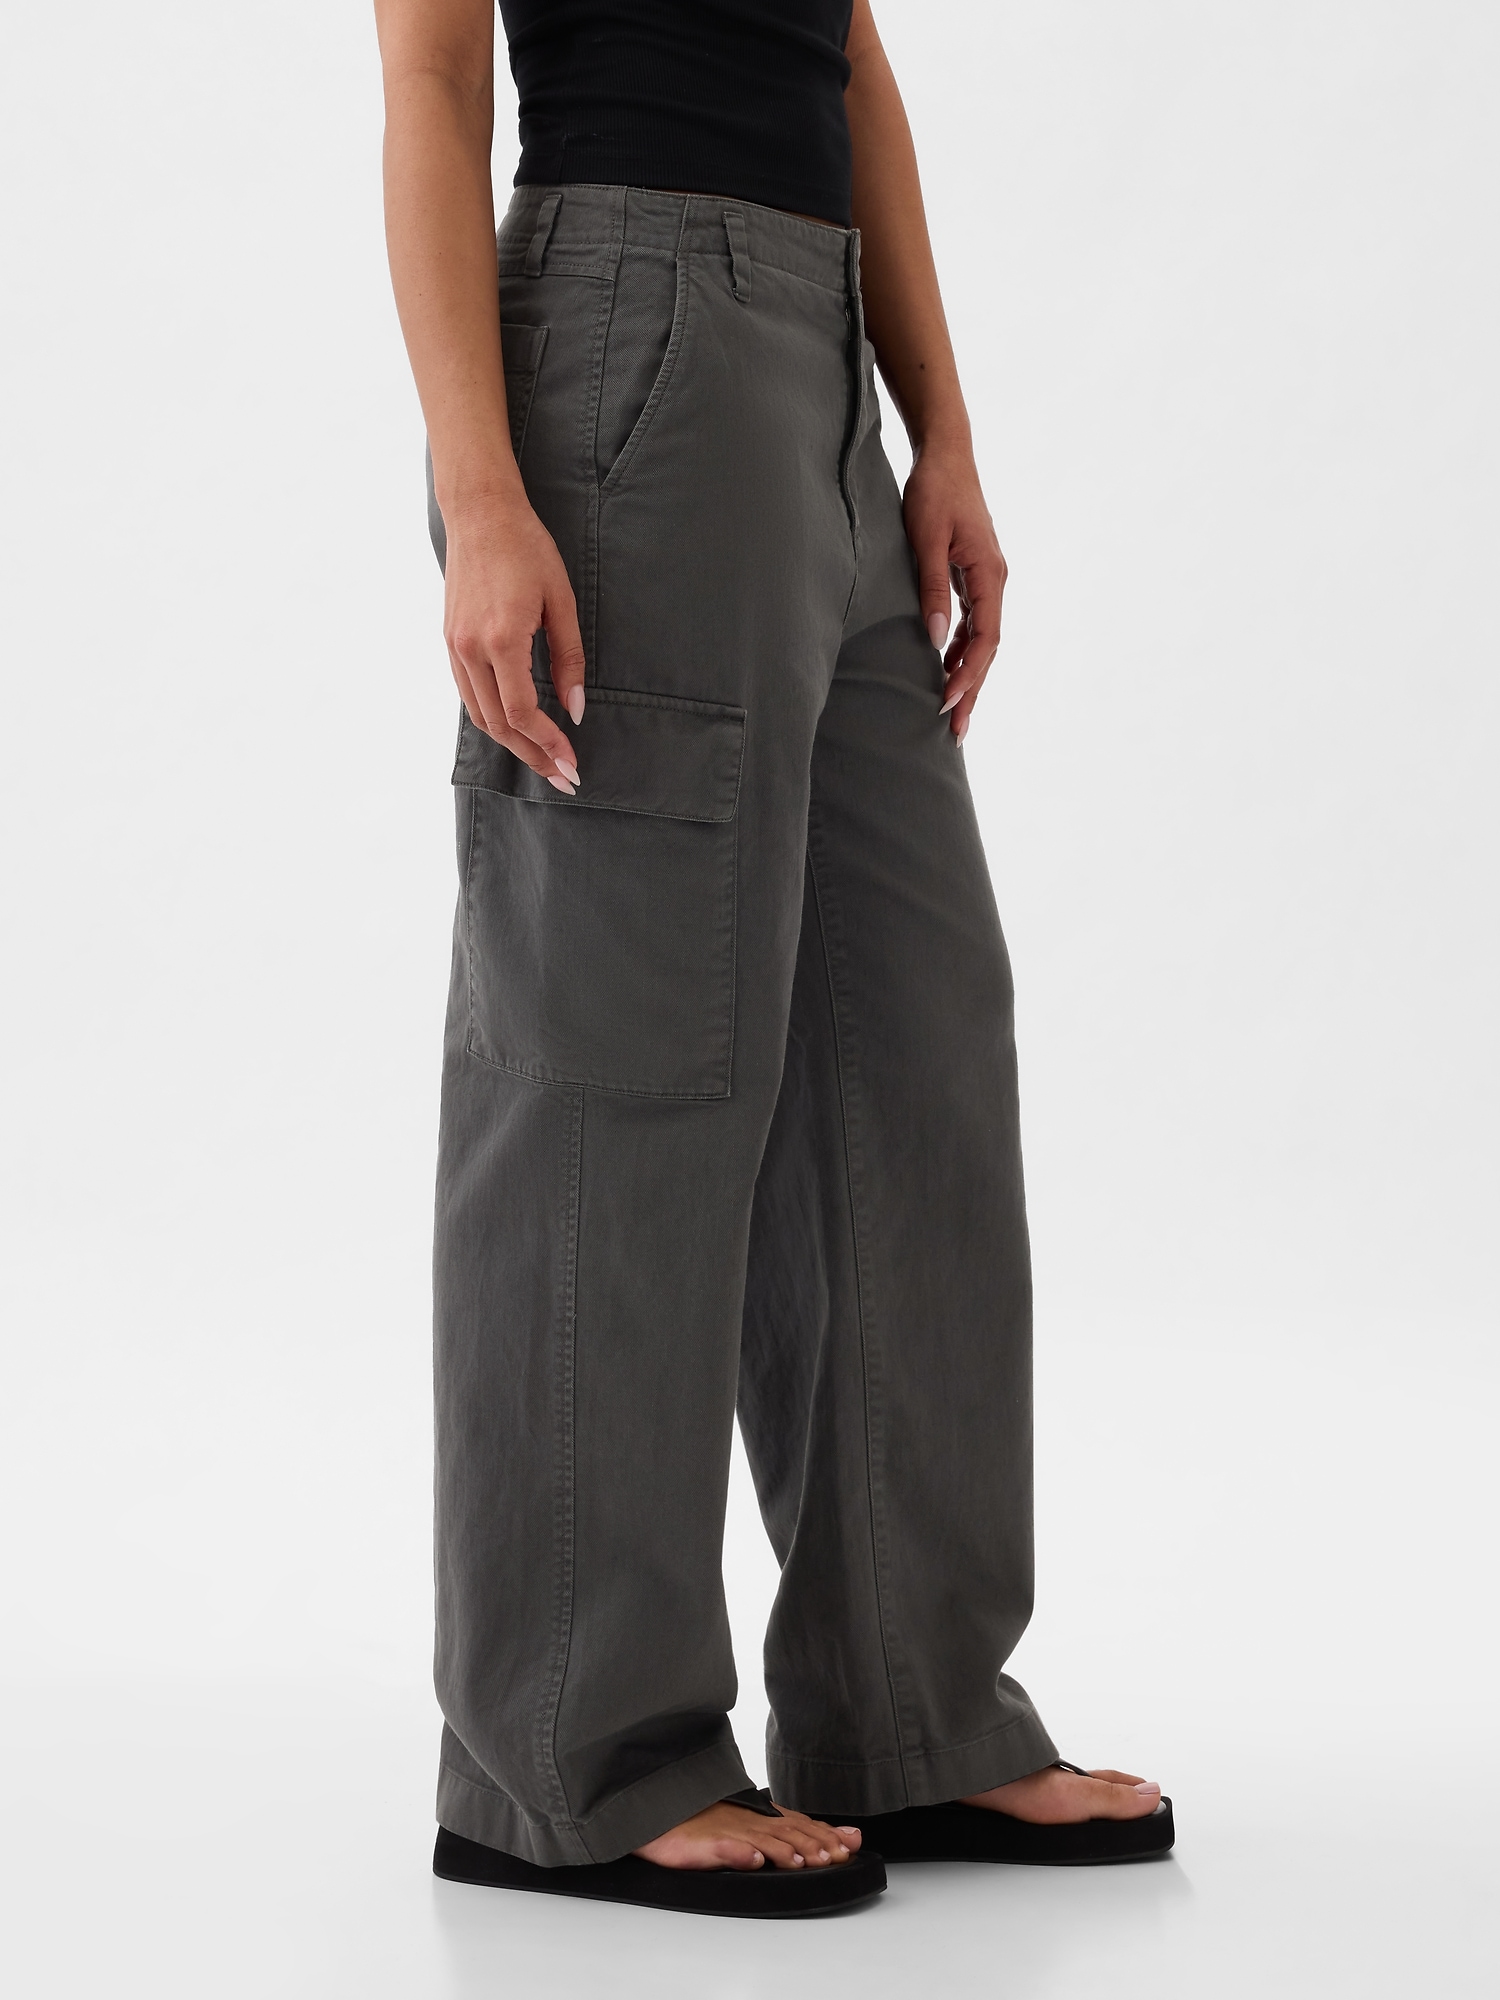 Gap Skinny Casual Pants for Women